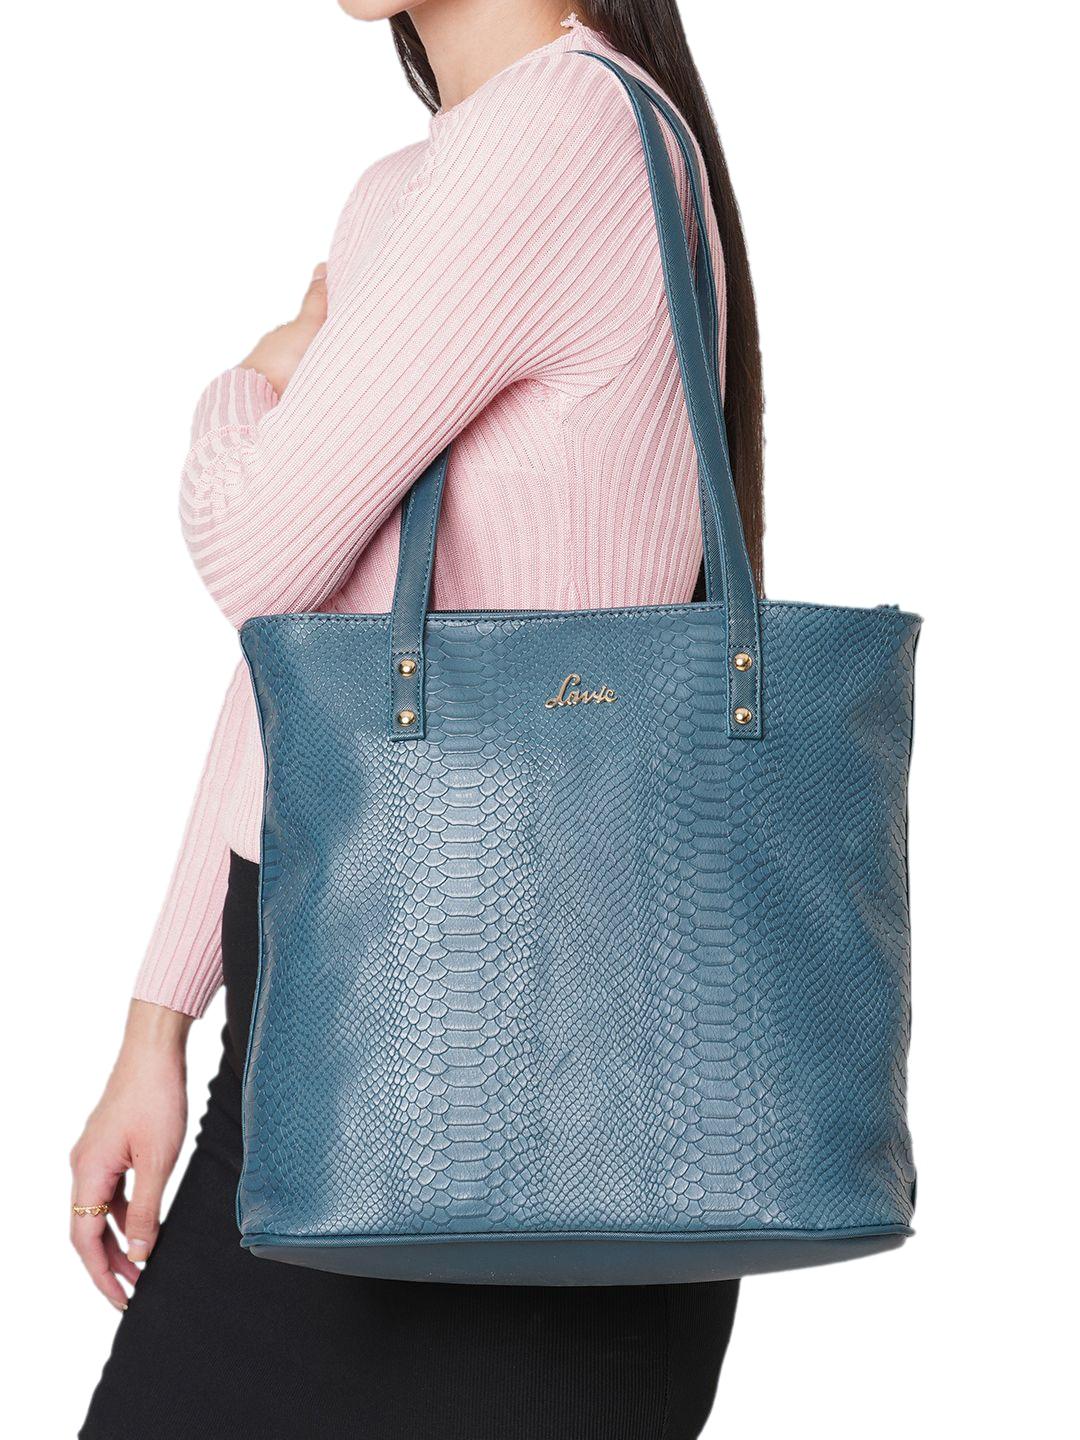 Lavie Pavo Nov Teal Blue Textured Structured Shoulder Bag